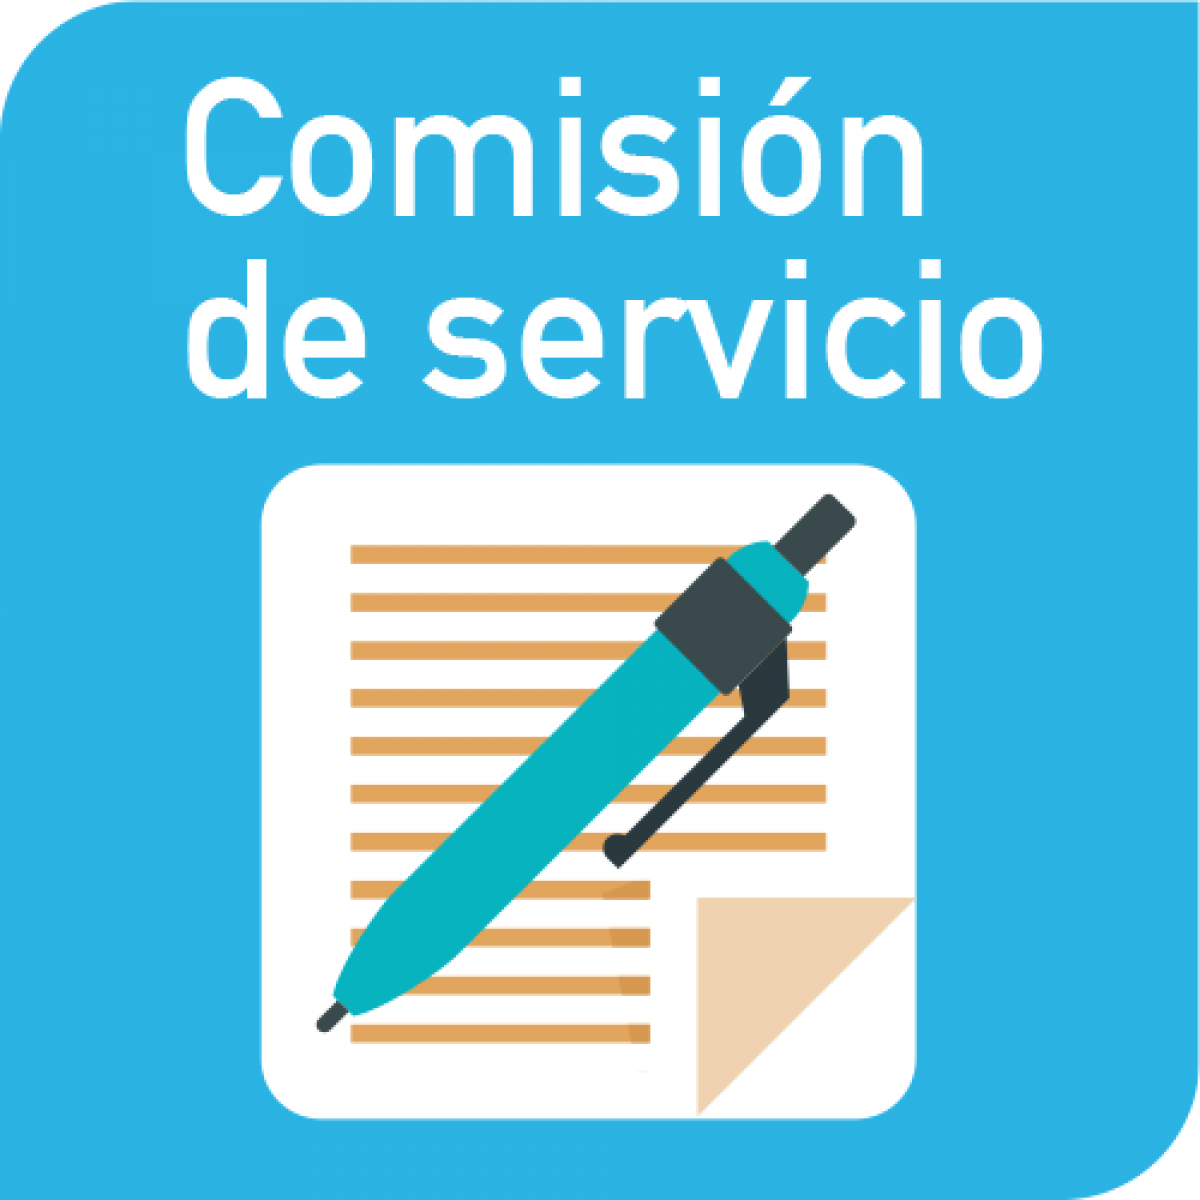 Comisión de servicios